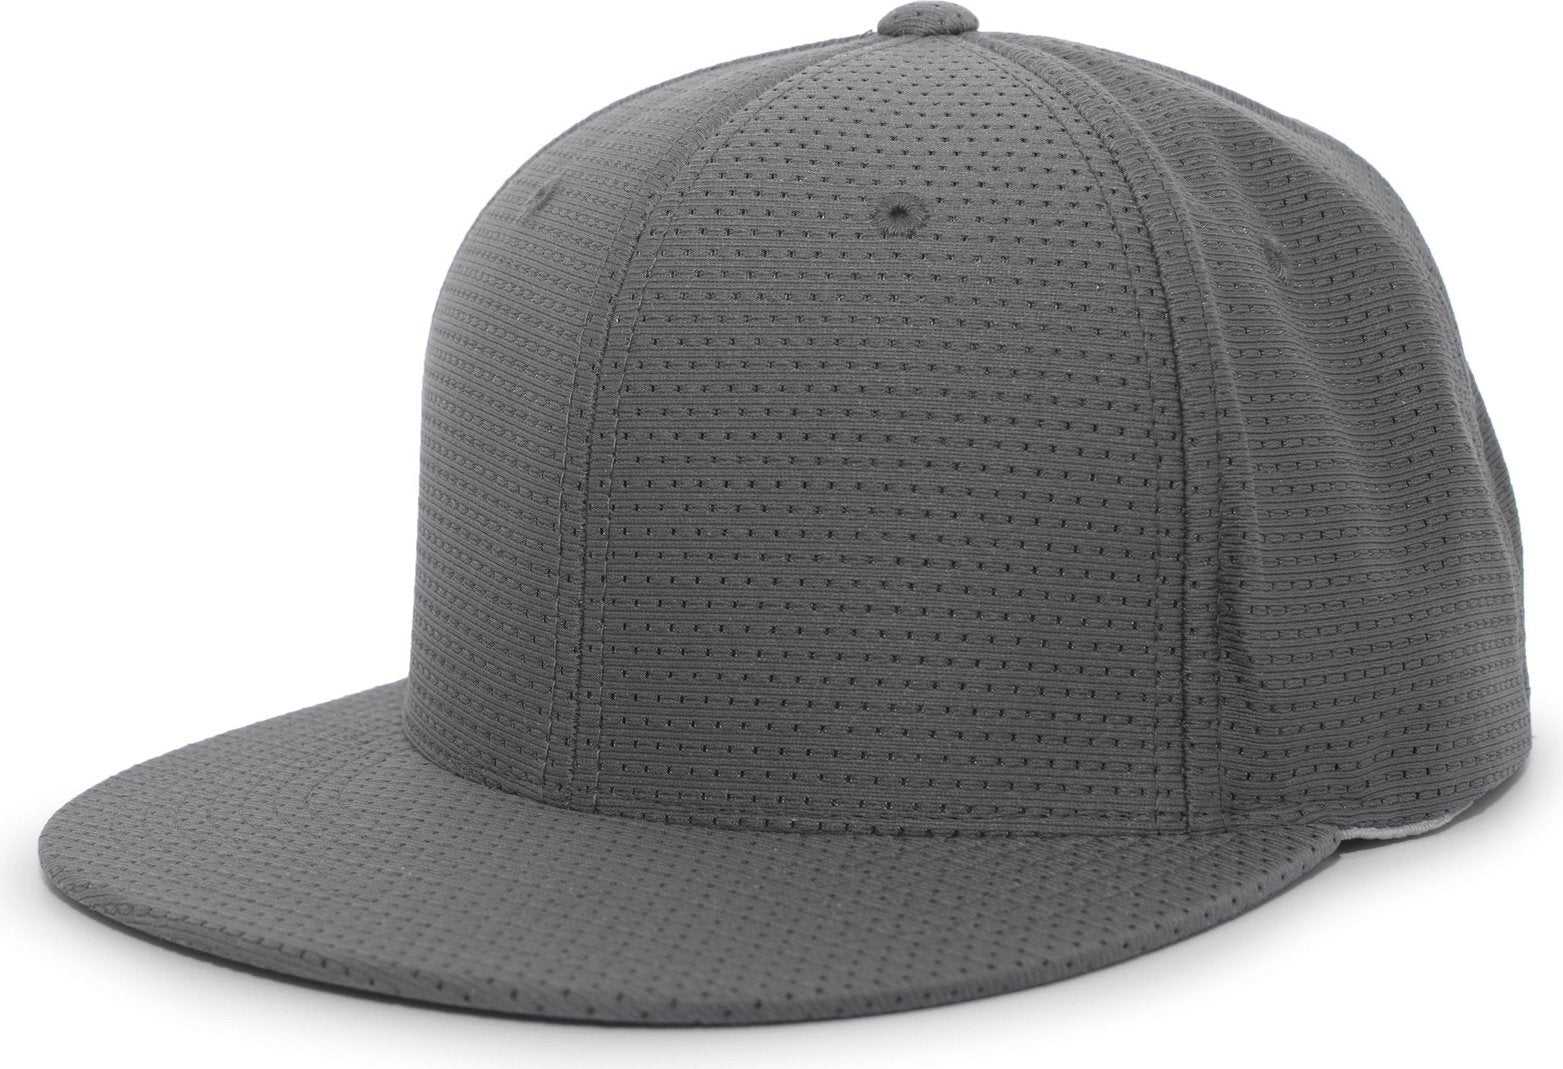 Pacific Headwear ES818 Air Jersey Performance Flexfit Cap - Graphite - HIT a Double